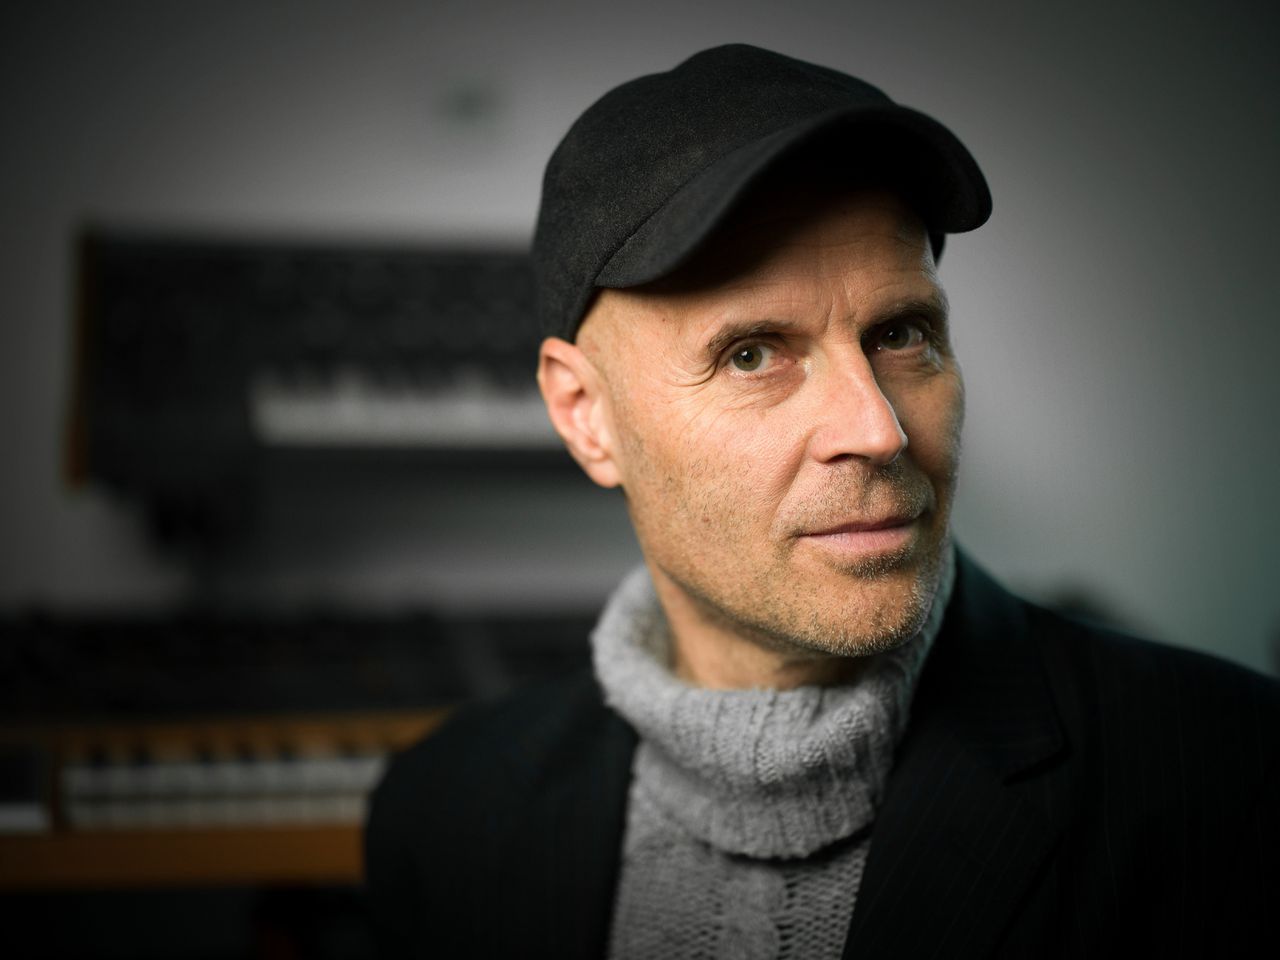 Nieuwe Componist des Vaderlands: ‘Ik wil Nederland vangen in muziek’ 